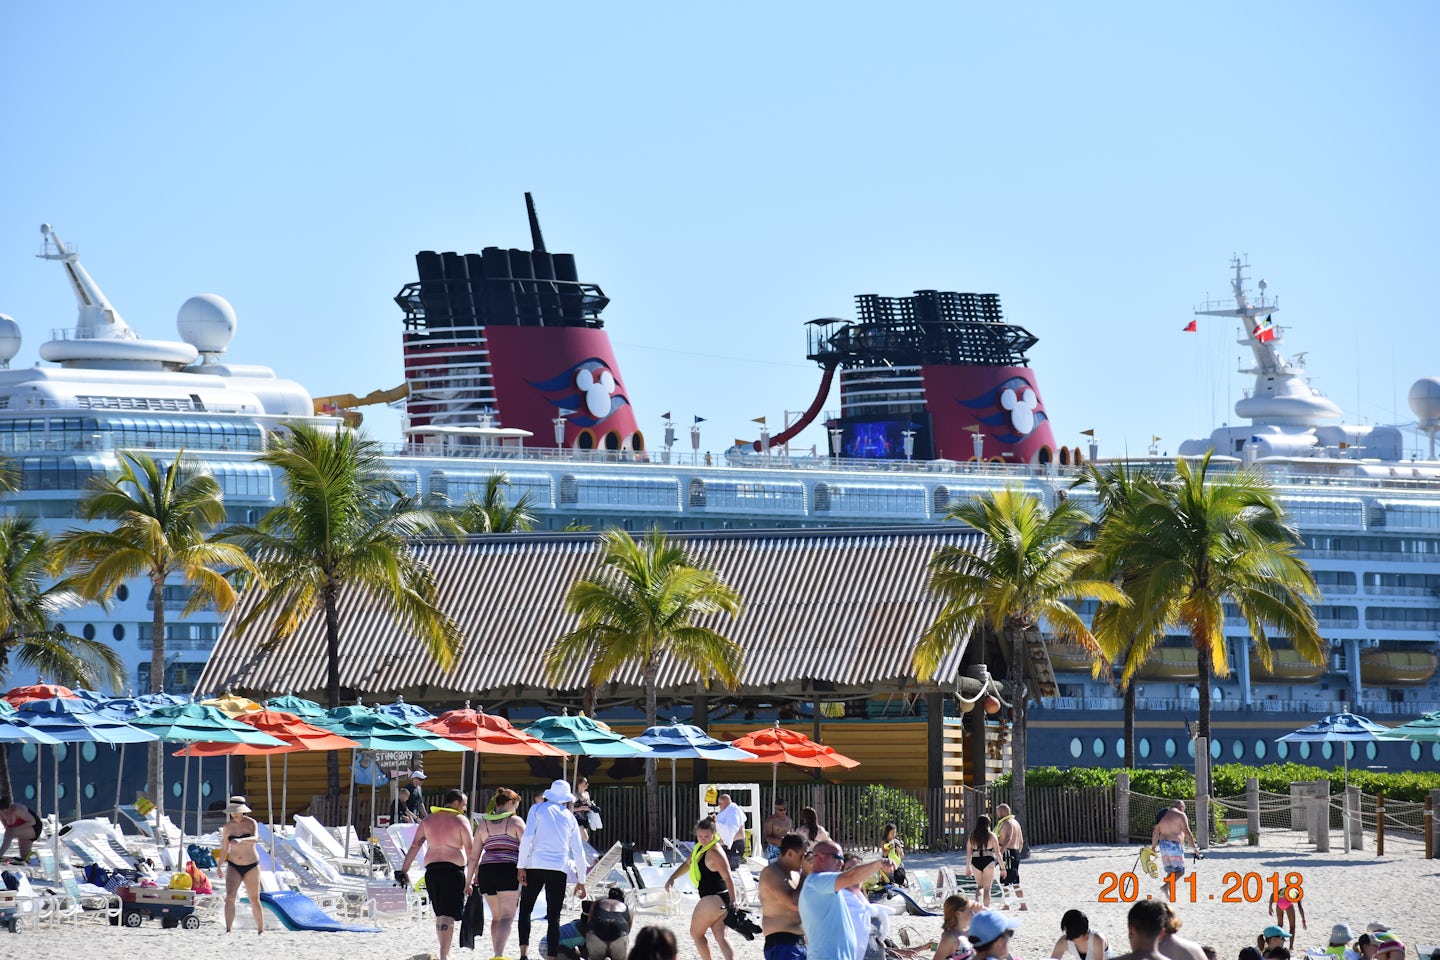 Disney Magic docked at Castaway Cay